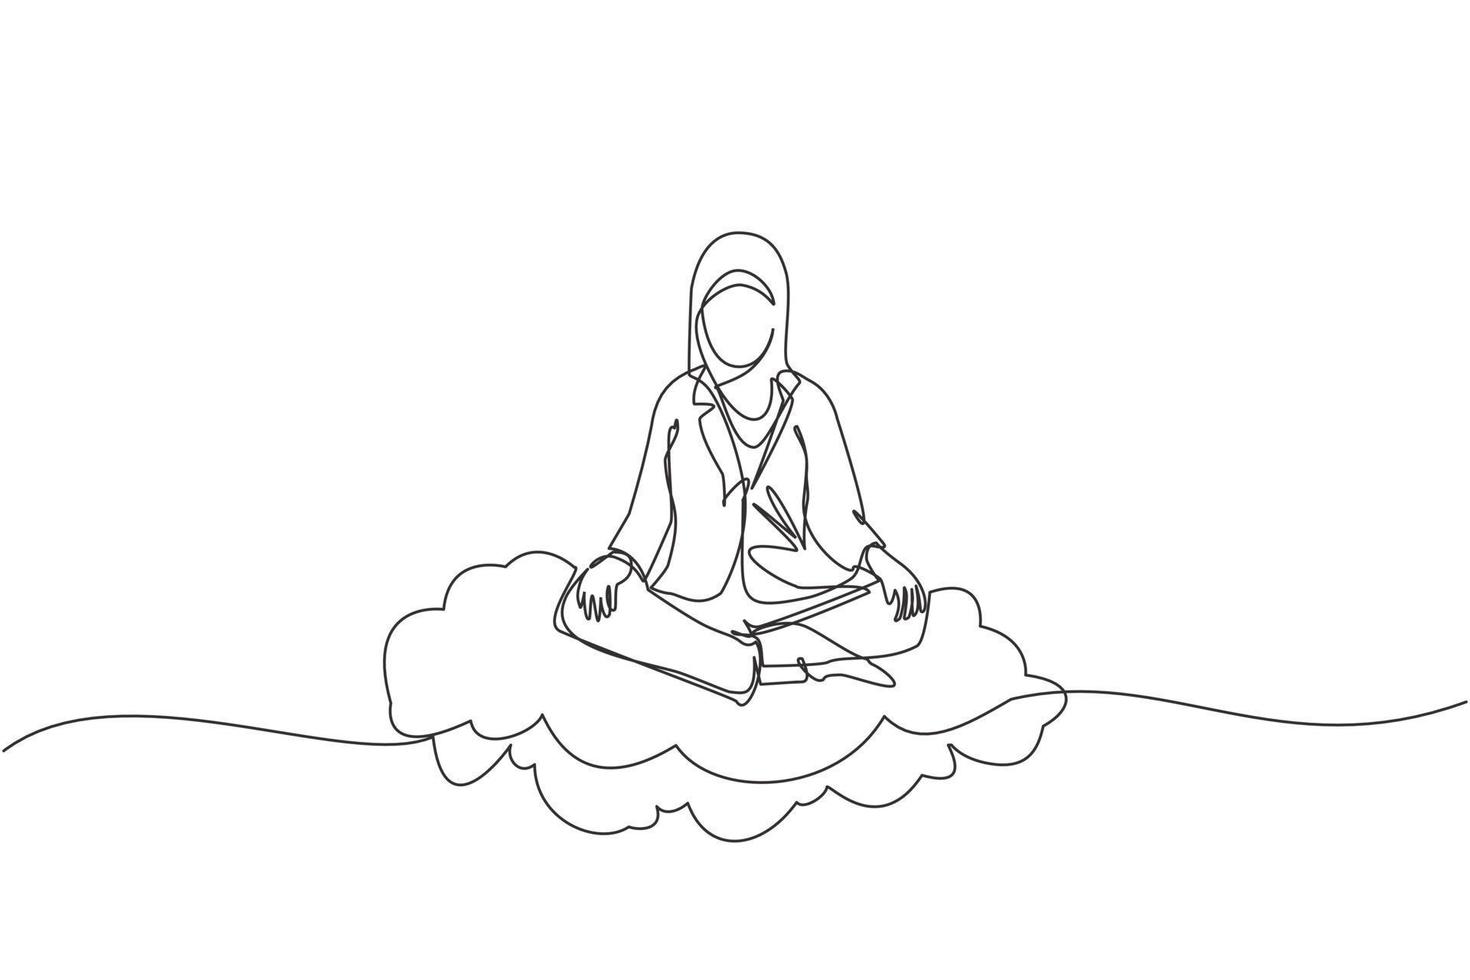 disegno continuo di una linea la donna d'affari araba si rilassa, medita nella posizione del loto sulle nuvole. donna carina che si rilassa con la posa di yoga o meditazione. illustrazione grafica vettoriale di disegno a linea singola